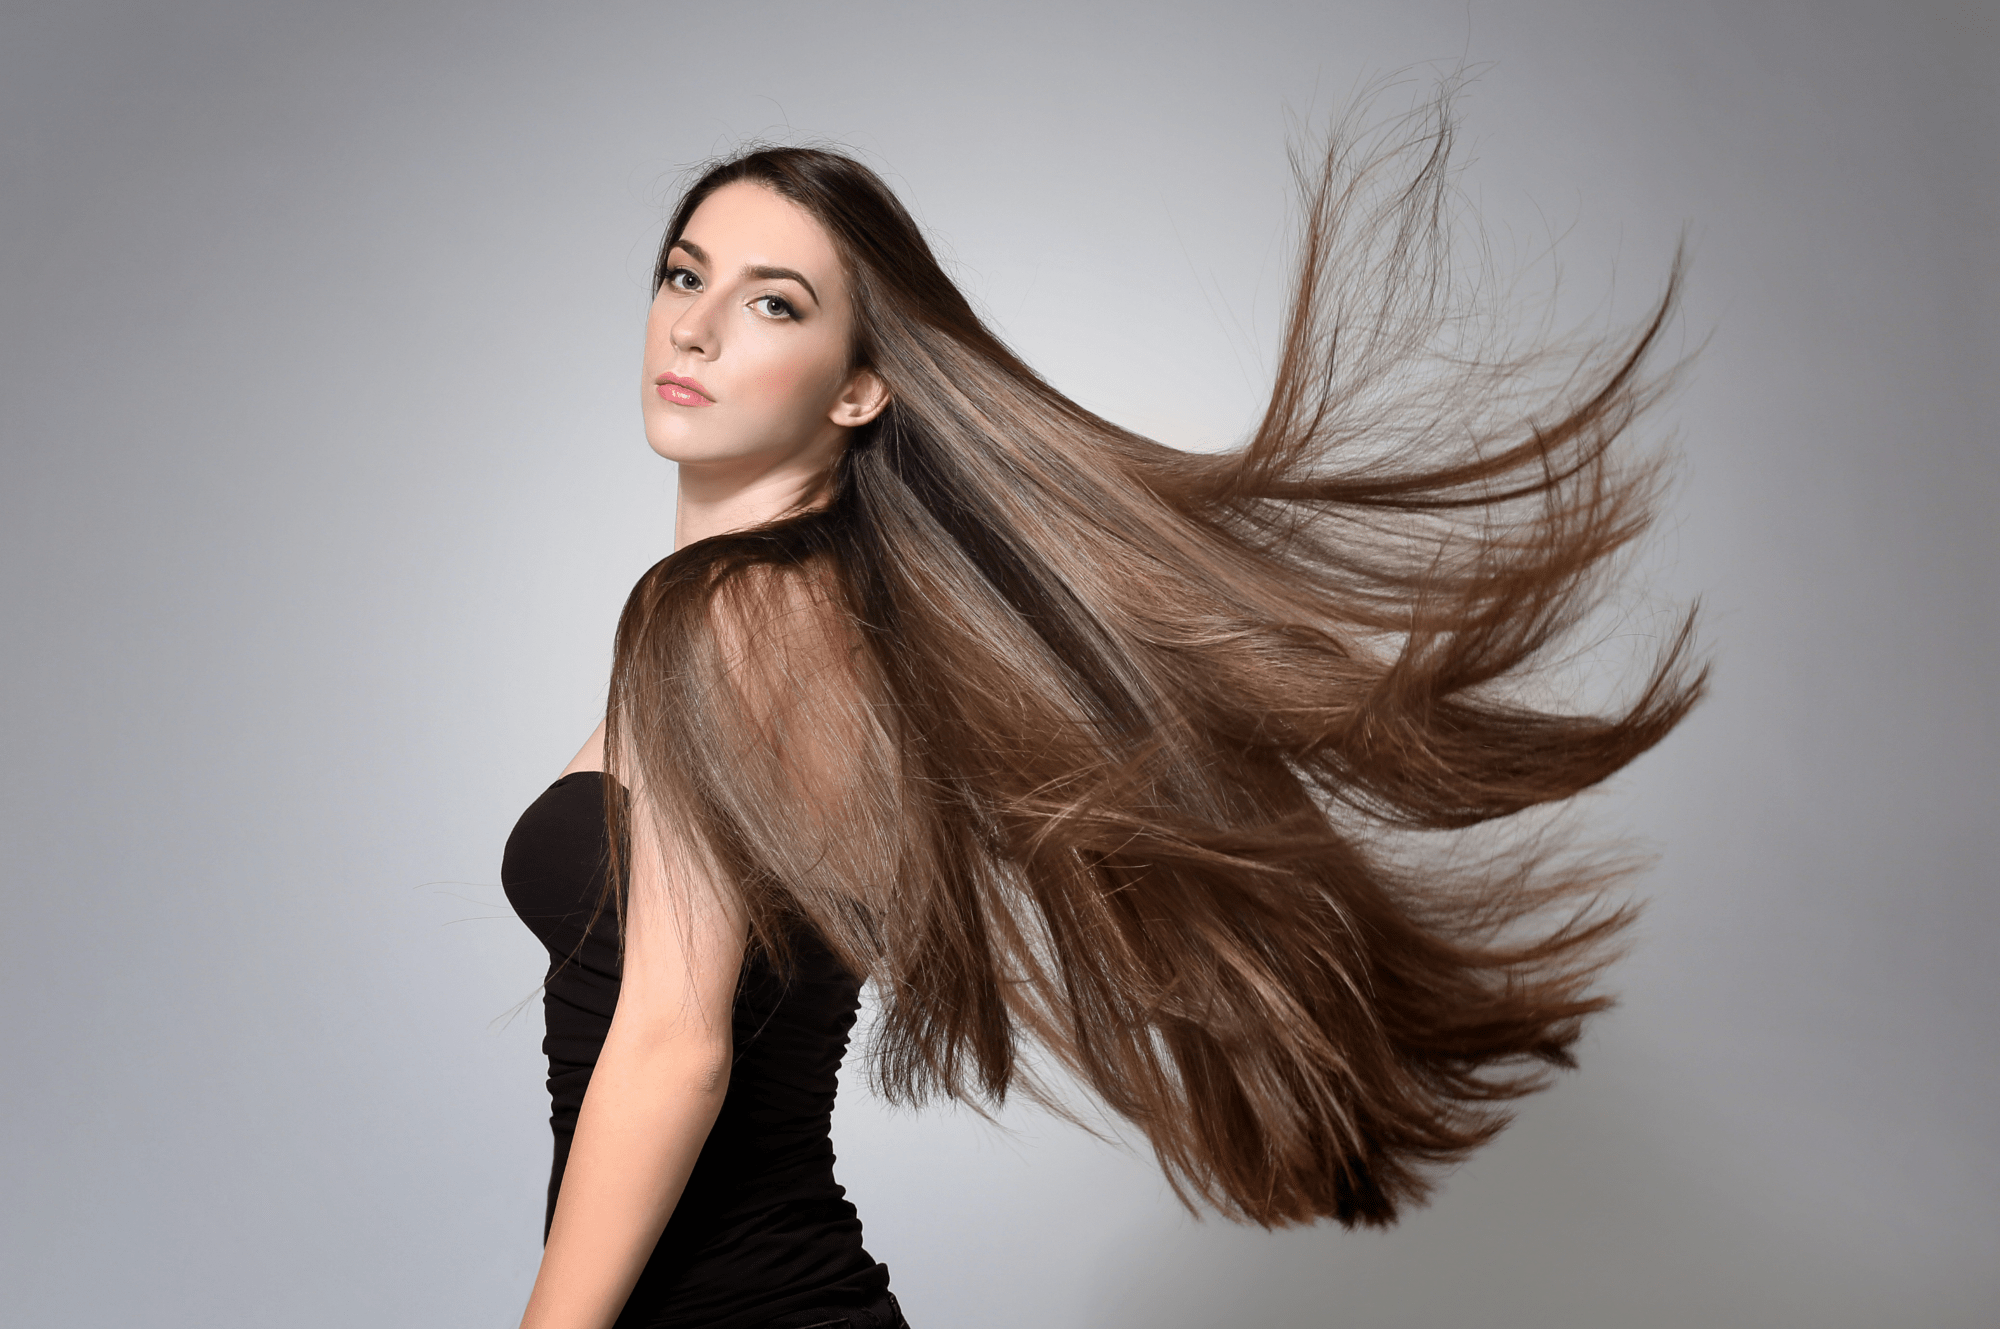 Как сделать длинные волосы гуще стрижкой